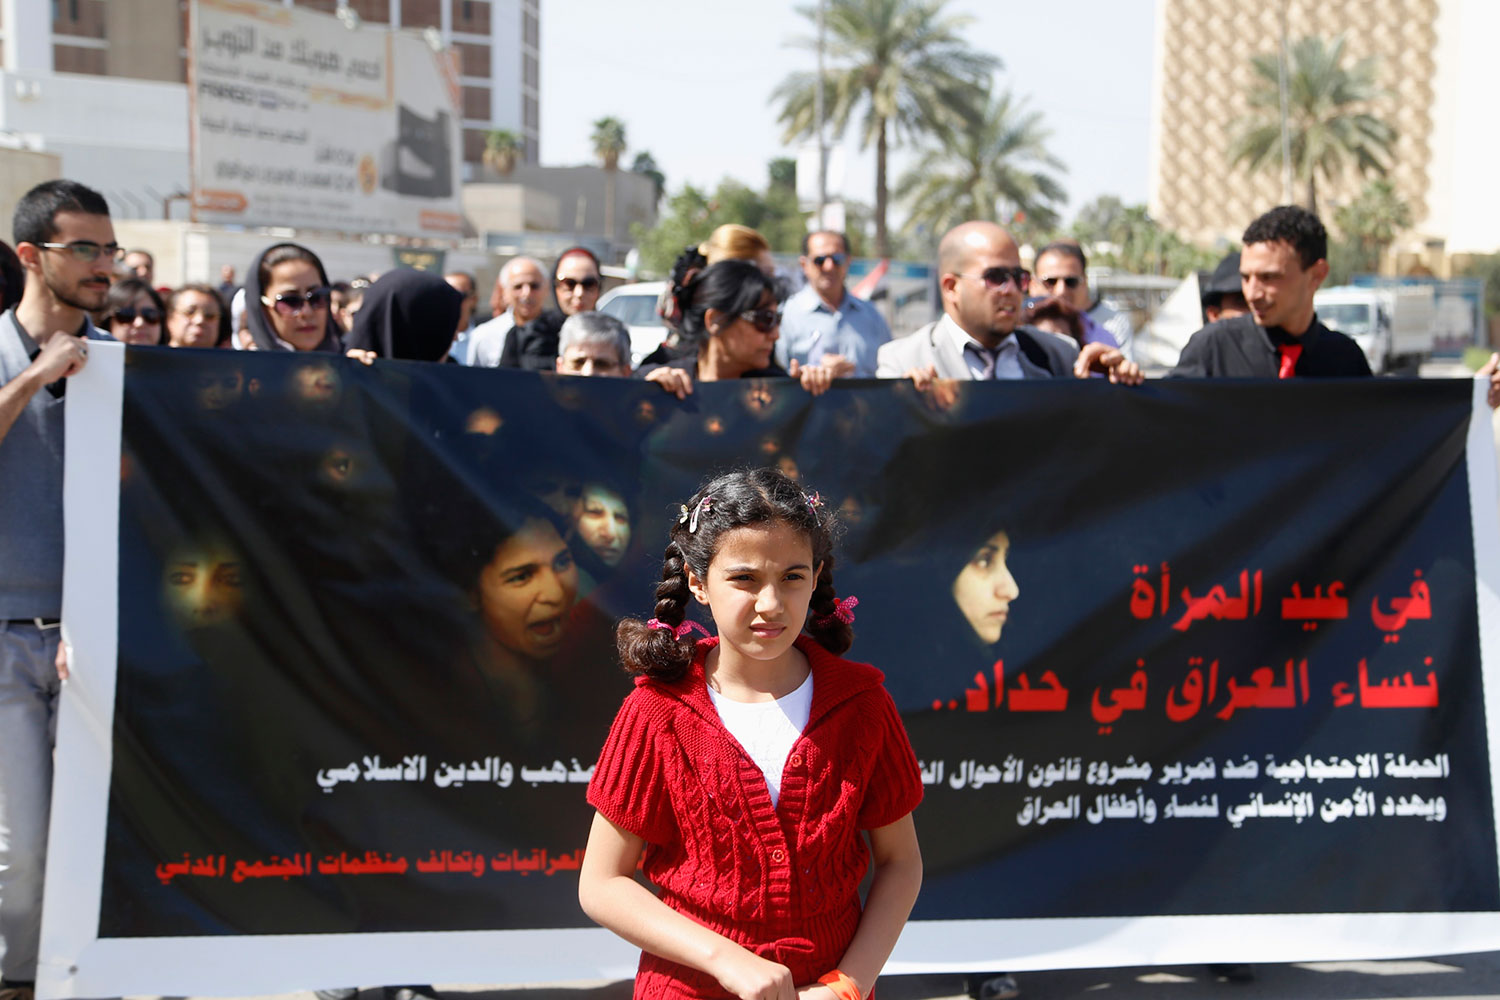 La nueva ley sobre la familia que prevé aprobar Irak permite el matrimonio a niñas de nueve años